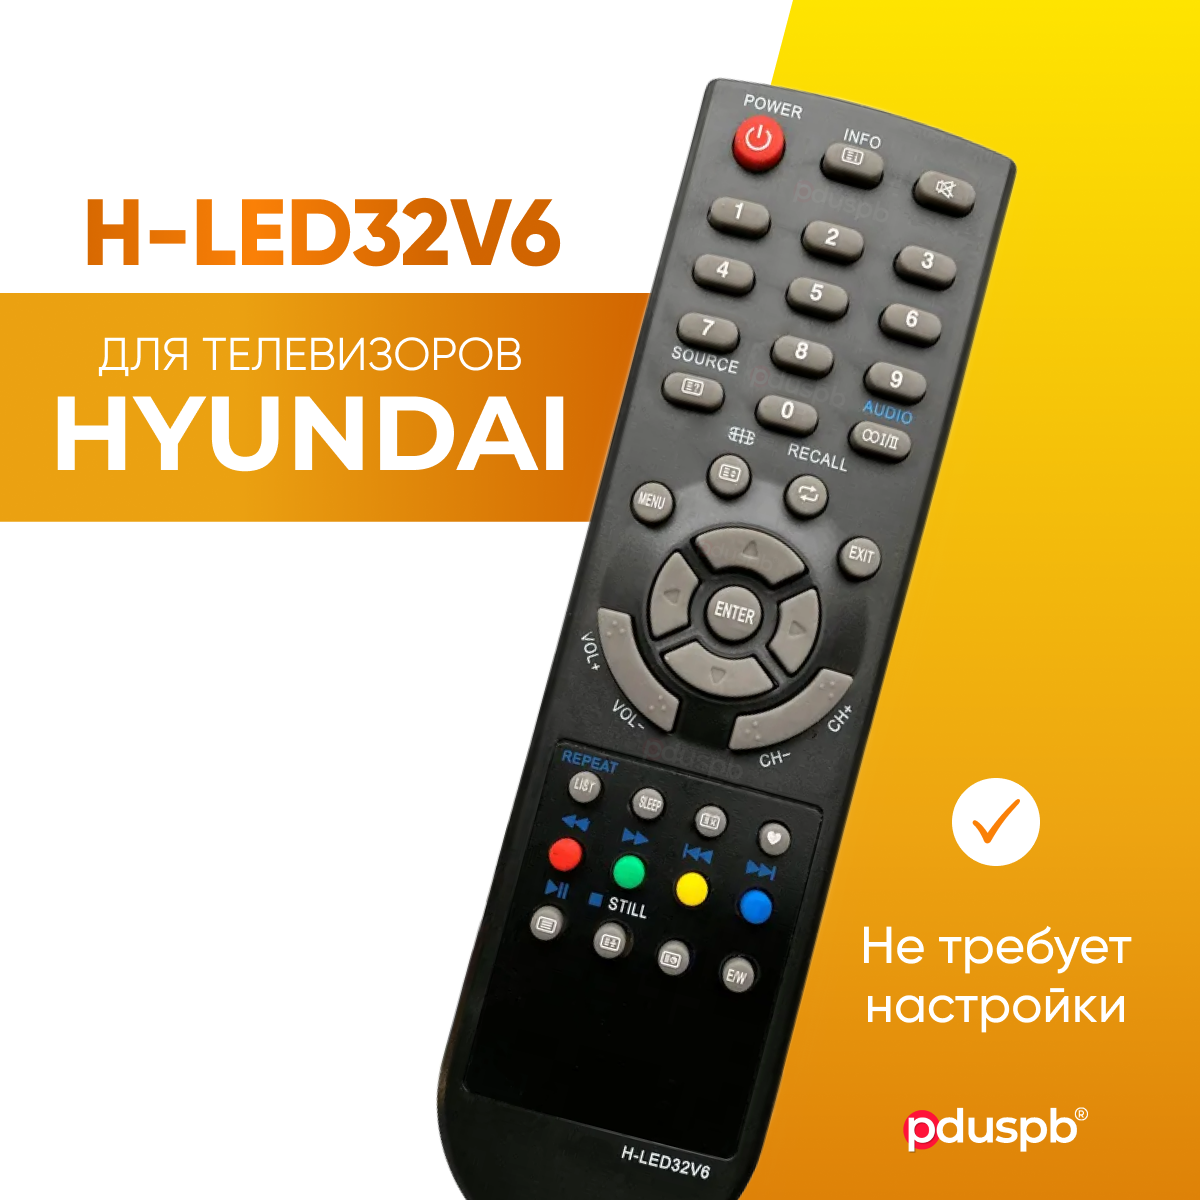 Пульт PDUSPB для Hyundai H-LED32V6 / 19V6 (HCY-44B)